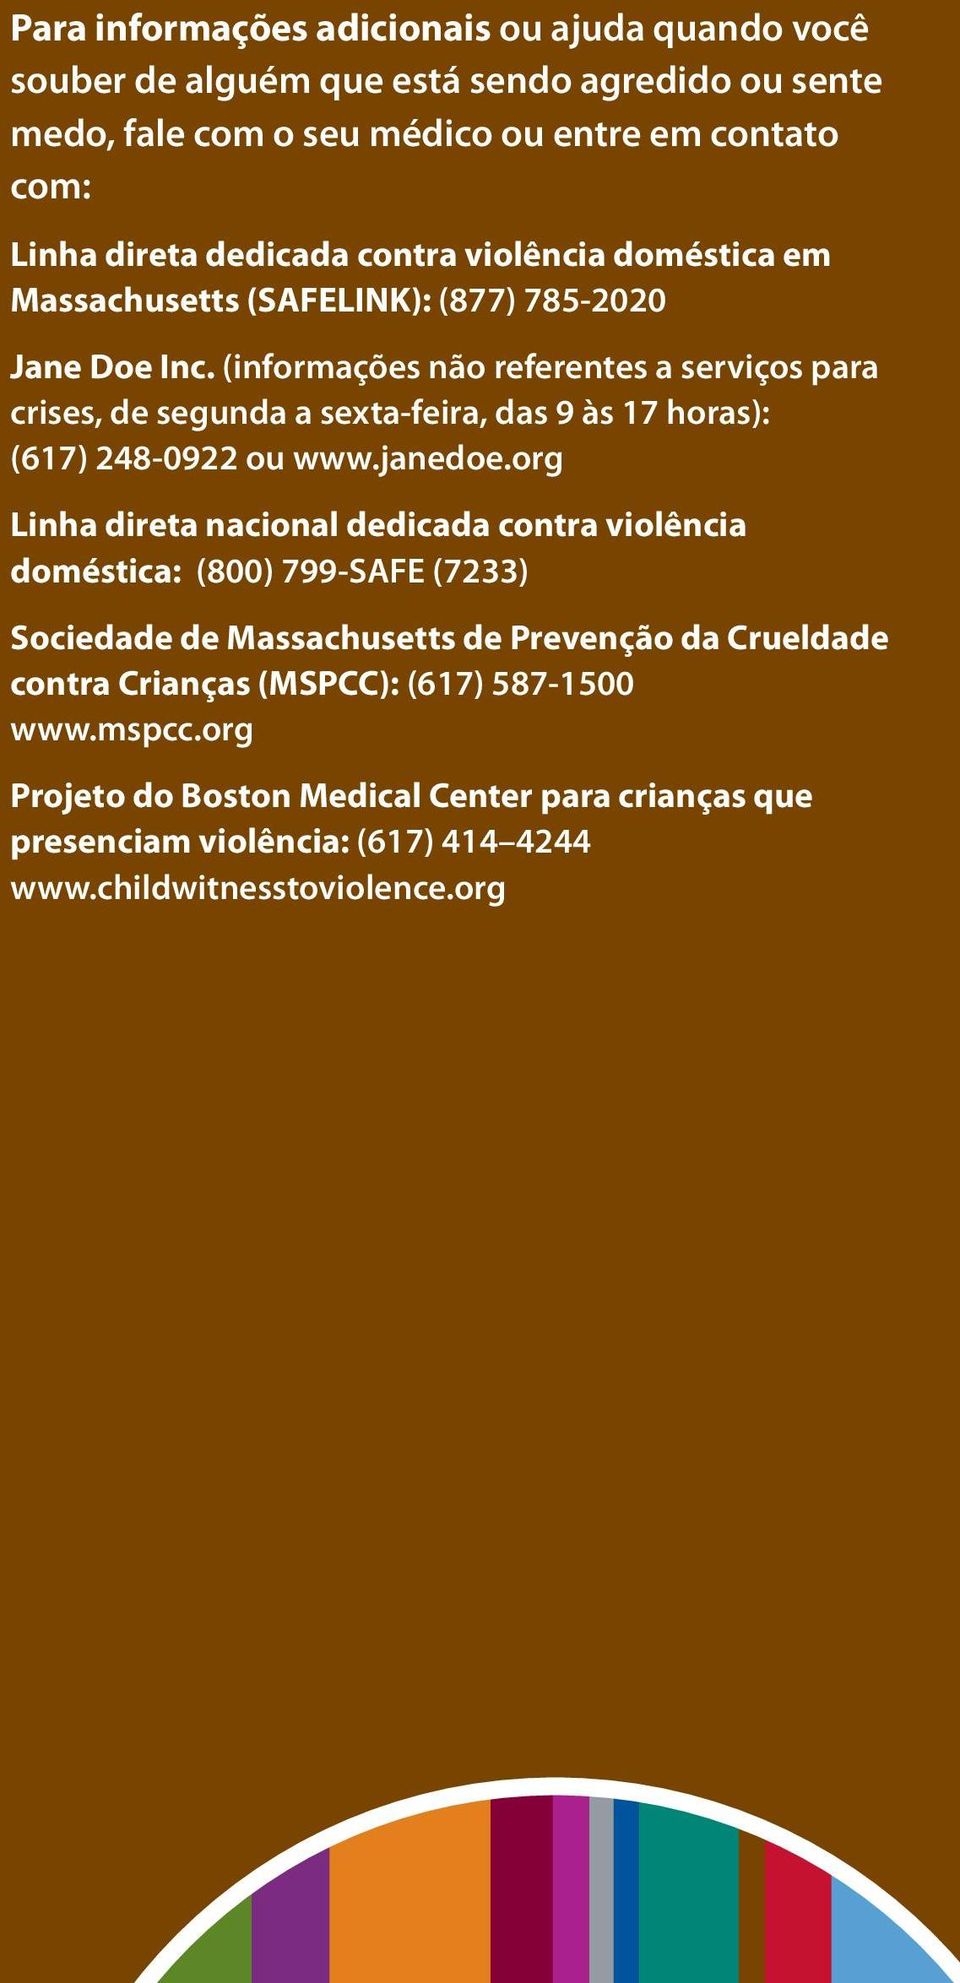 (informações não referentes a serviços para crises, de segunda a sexta-feira, das 9 às 17 horas): (617) 248-0922 ou www.janedoe.